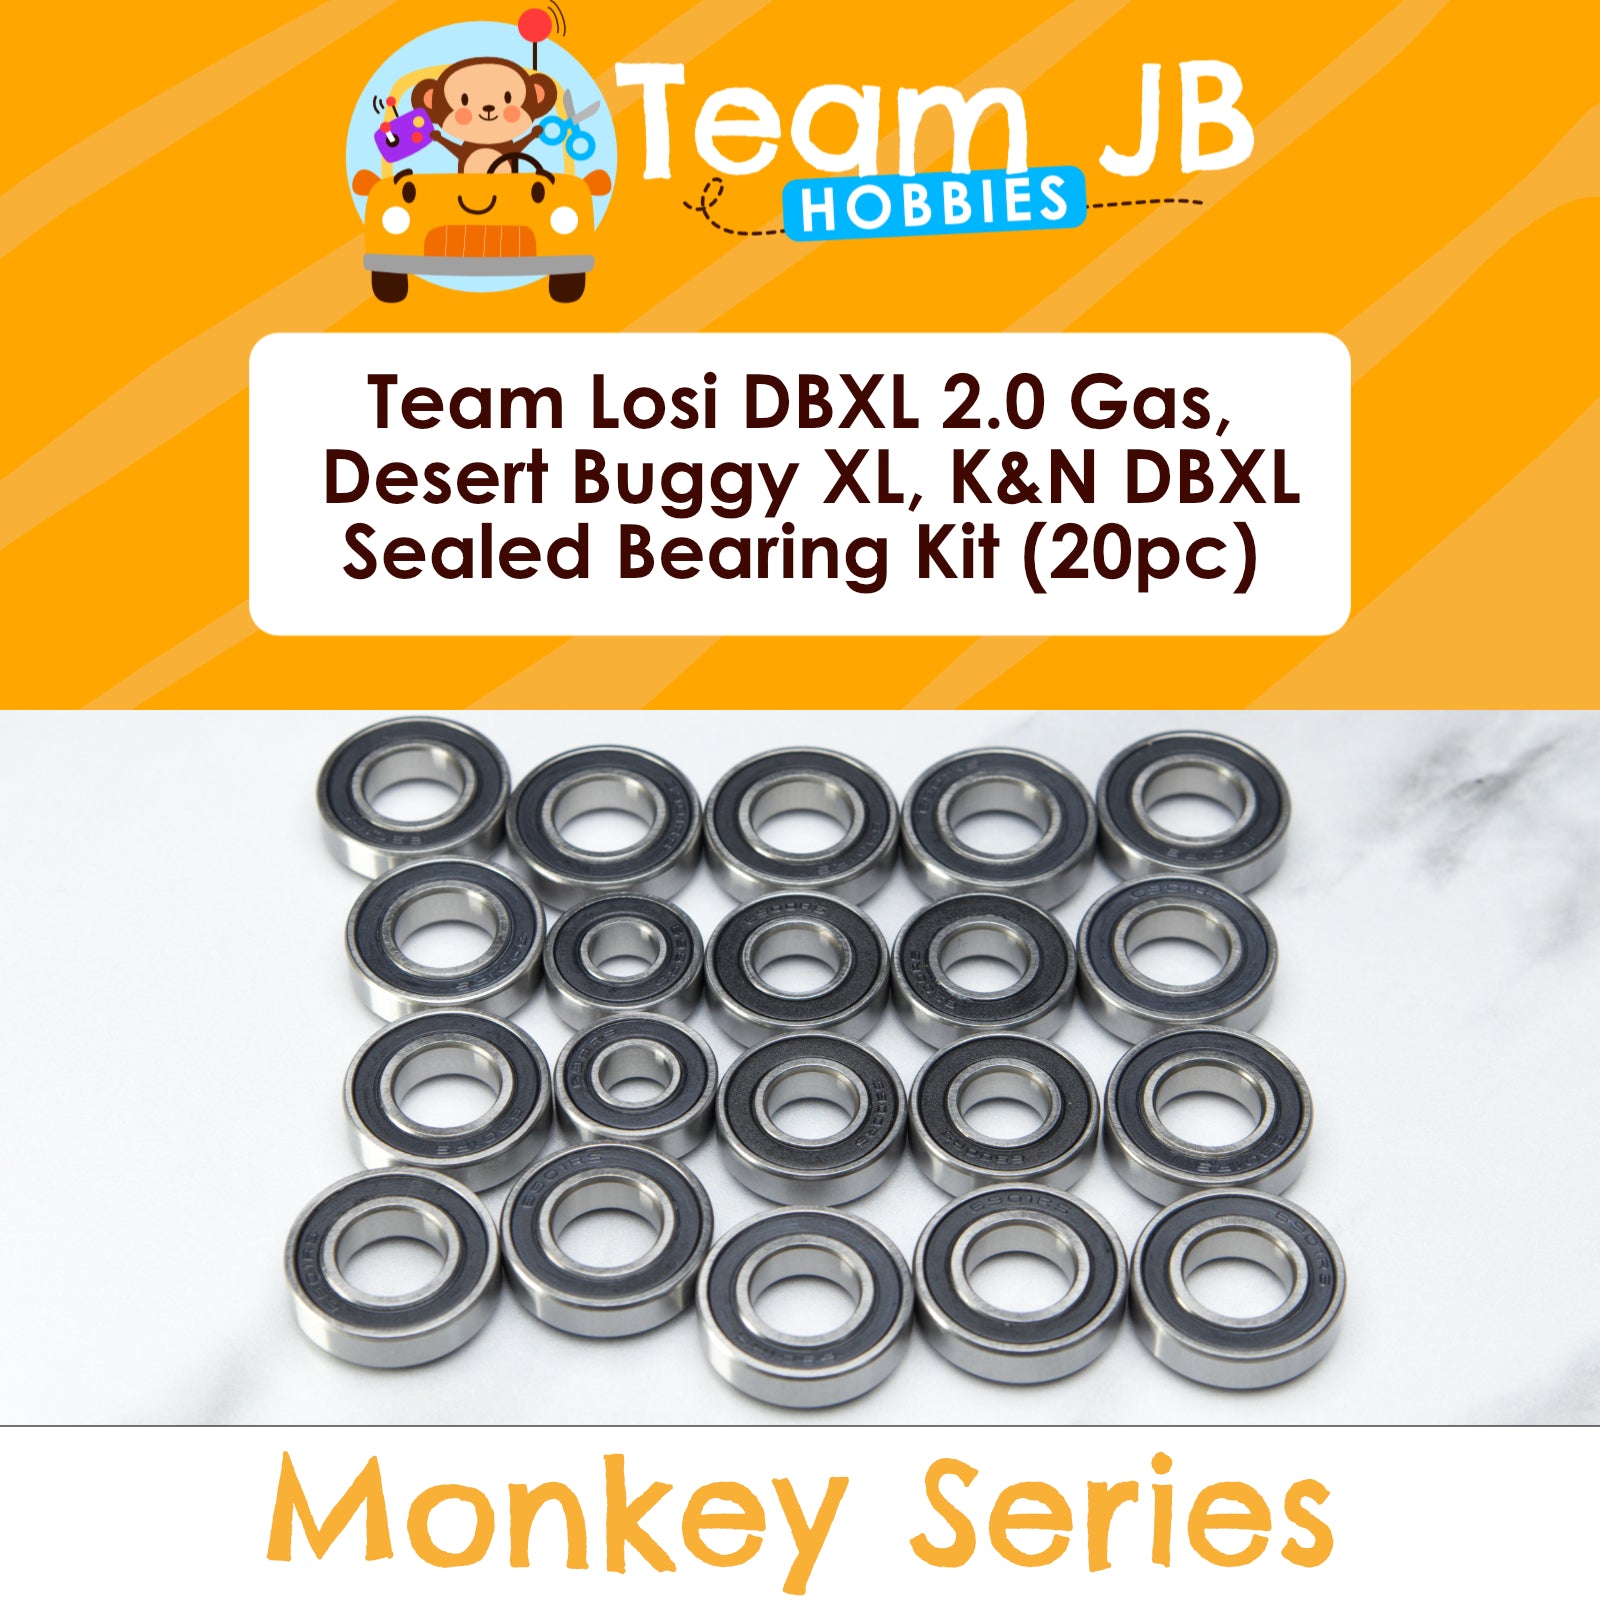 Team Losi DBXL 2.0 Gas, Desert Buggy XL, K&N DBXL - Sealed Bearing Kit